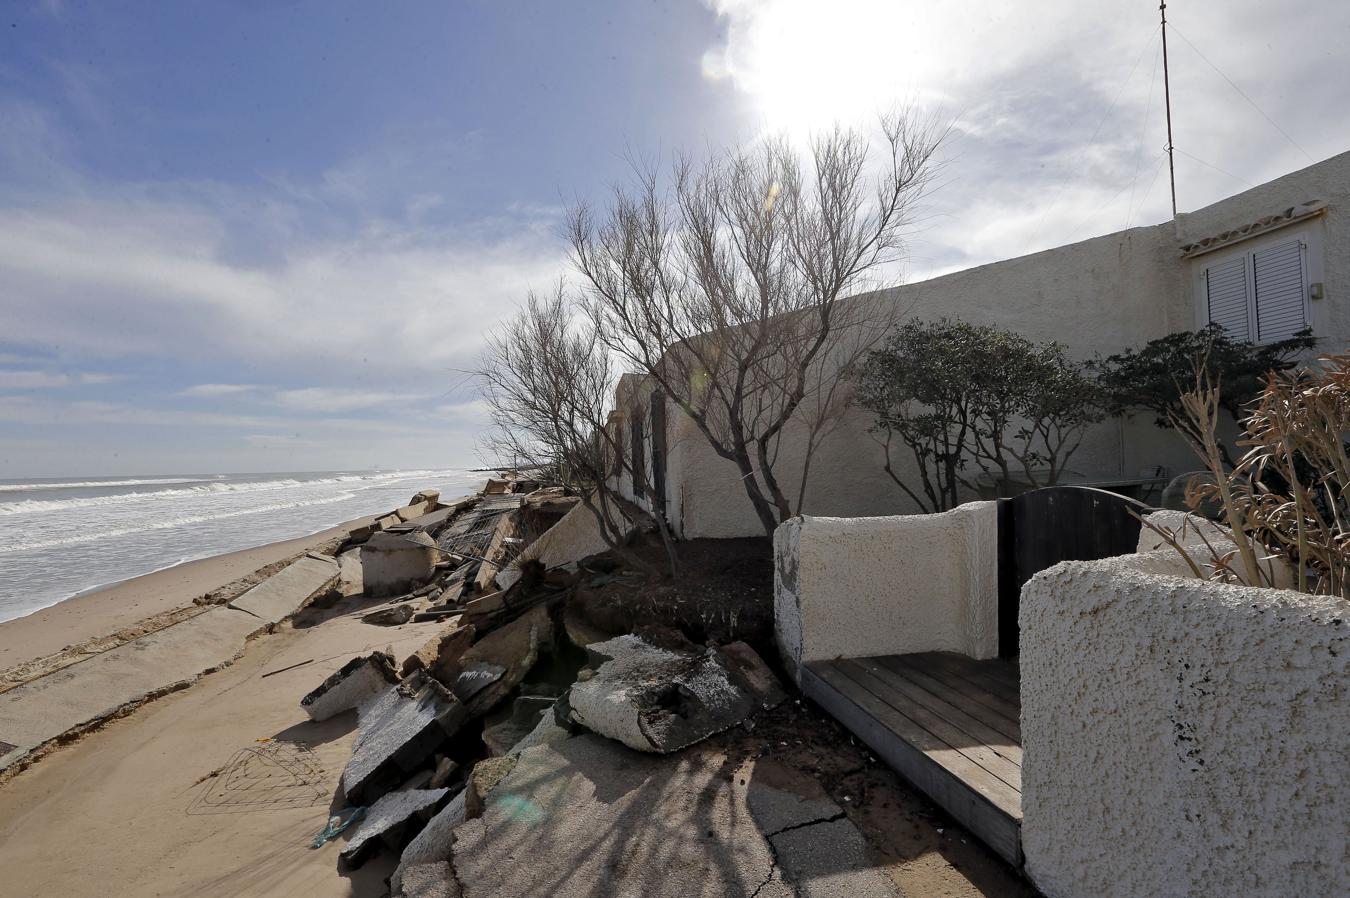 Efectos del temporal en la playa del Saler, Valencia